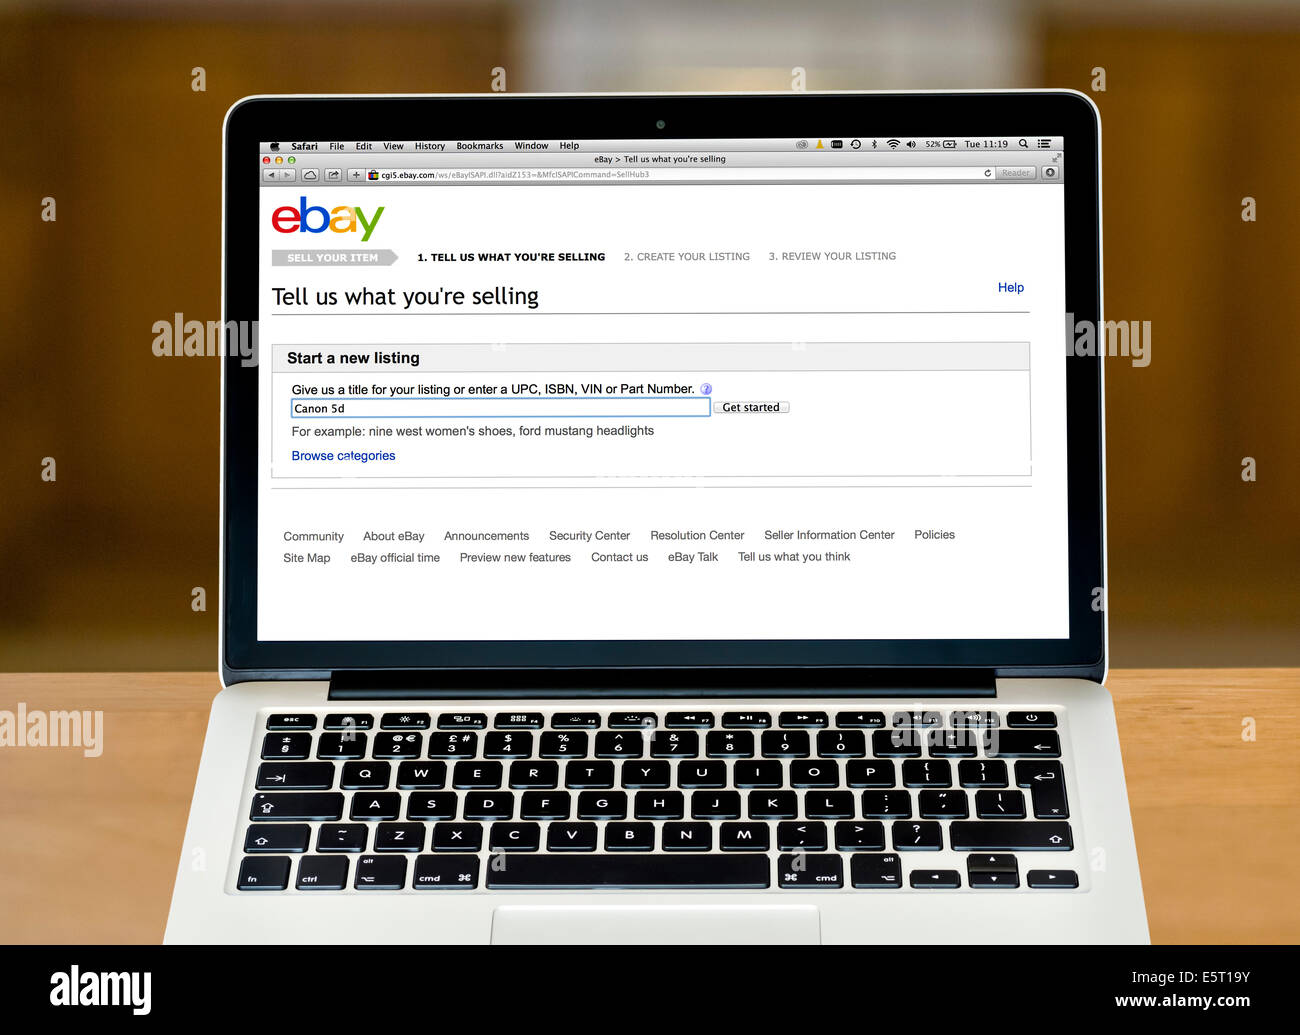 Vender un artículo en ebay.com, vistos en una 13" MacBook Pro de Apple Retina equipo Foto de stock